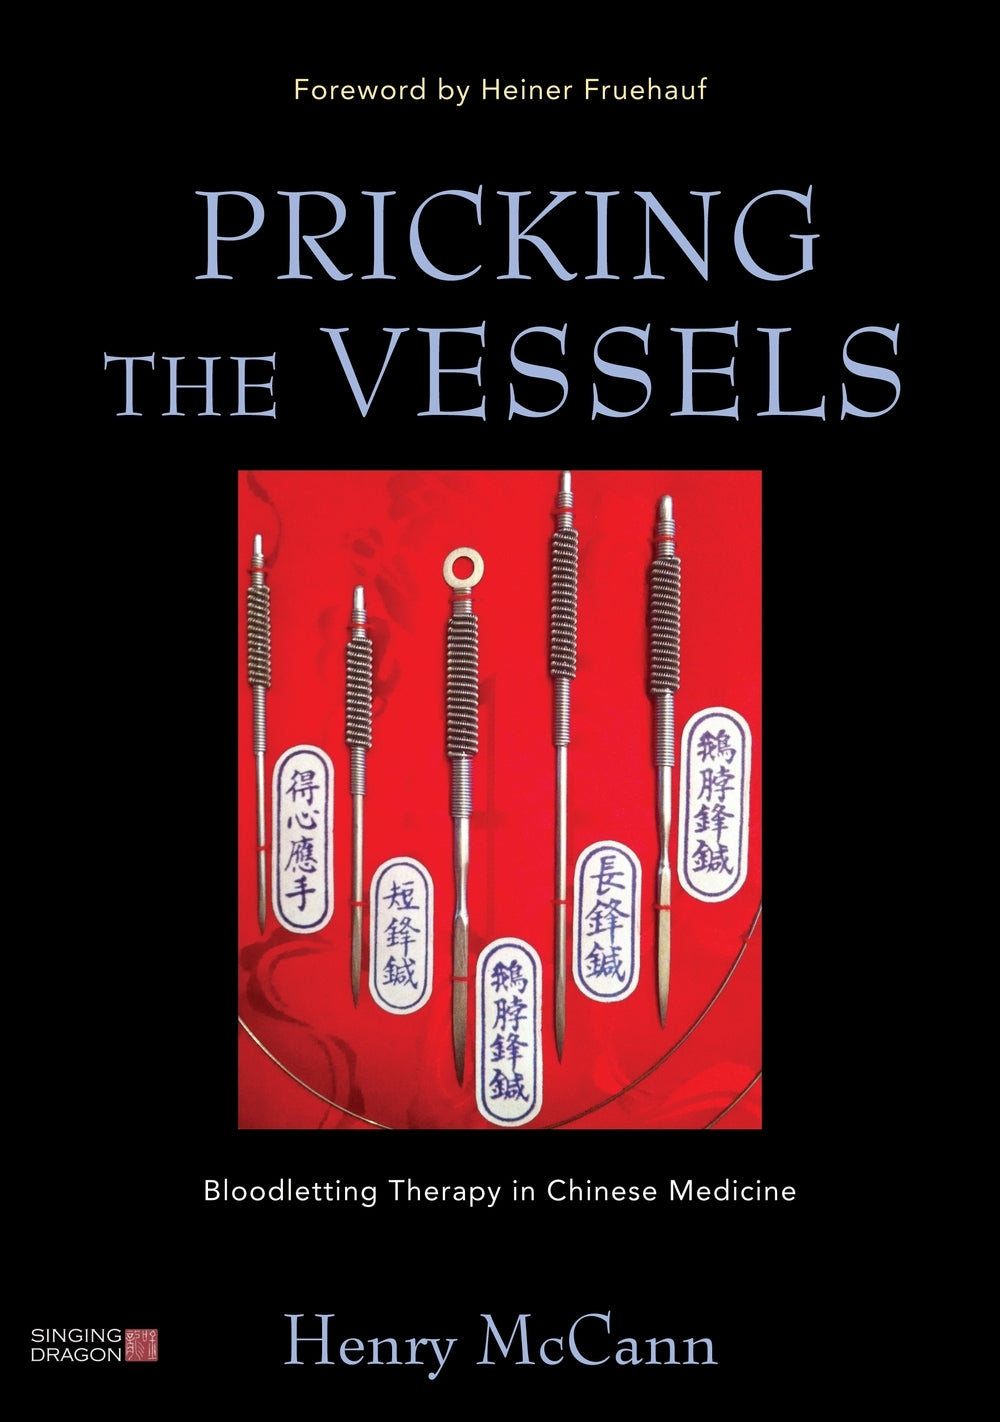 Pricking the Vessels by Heiner Fruehauf, Henry McCann